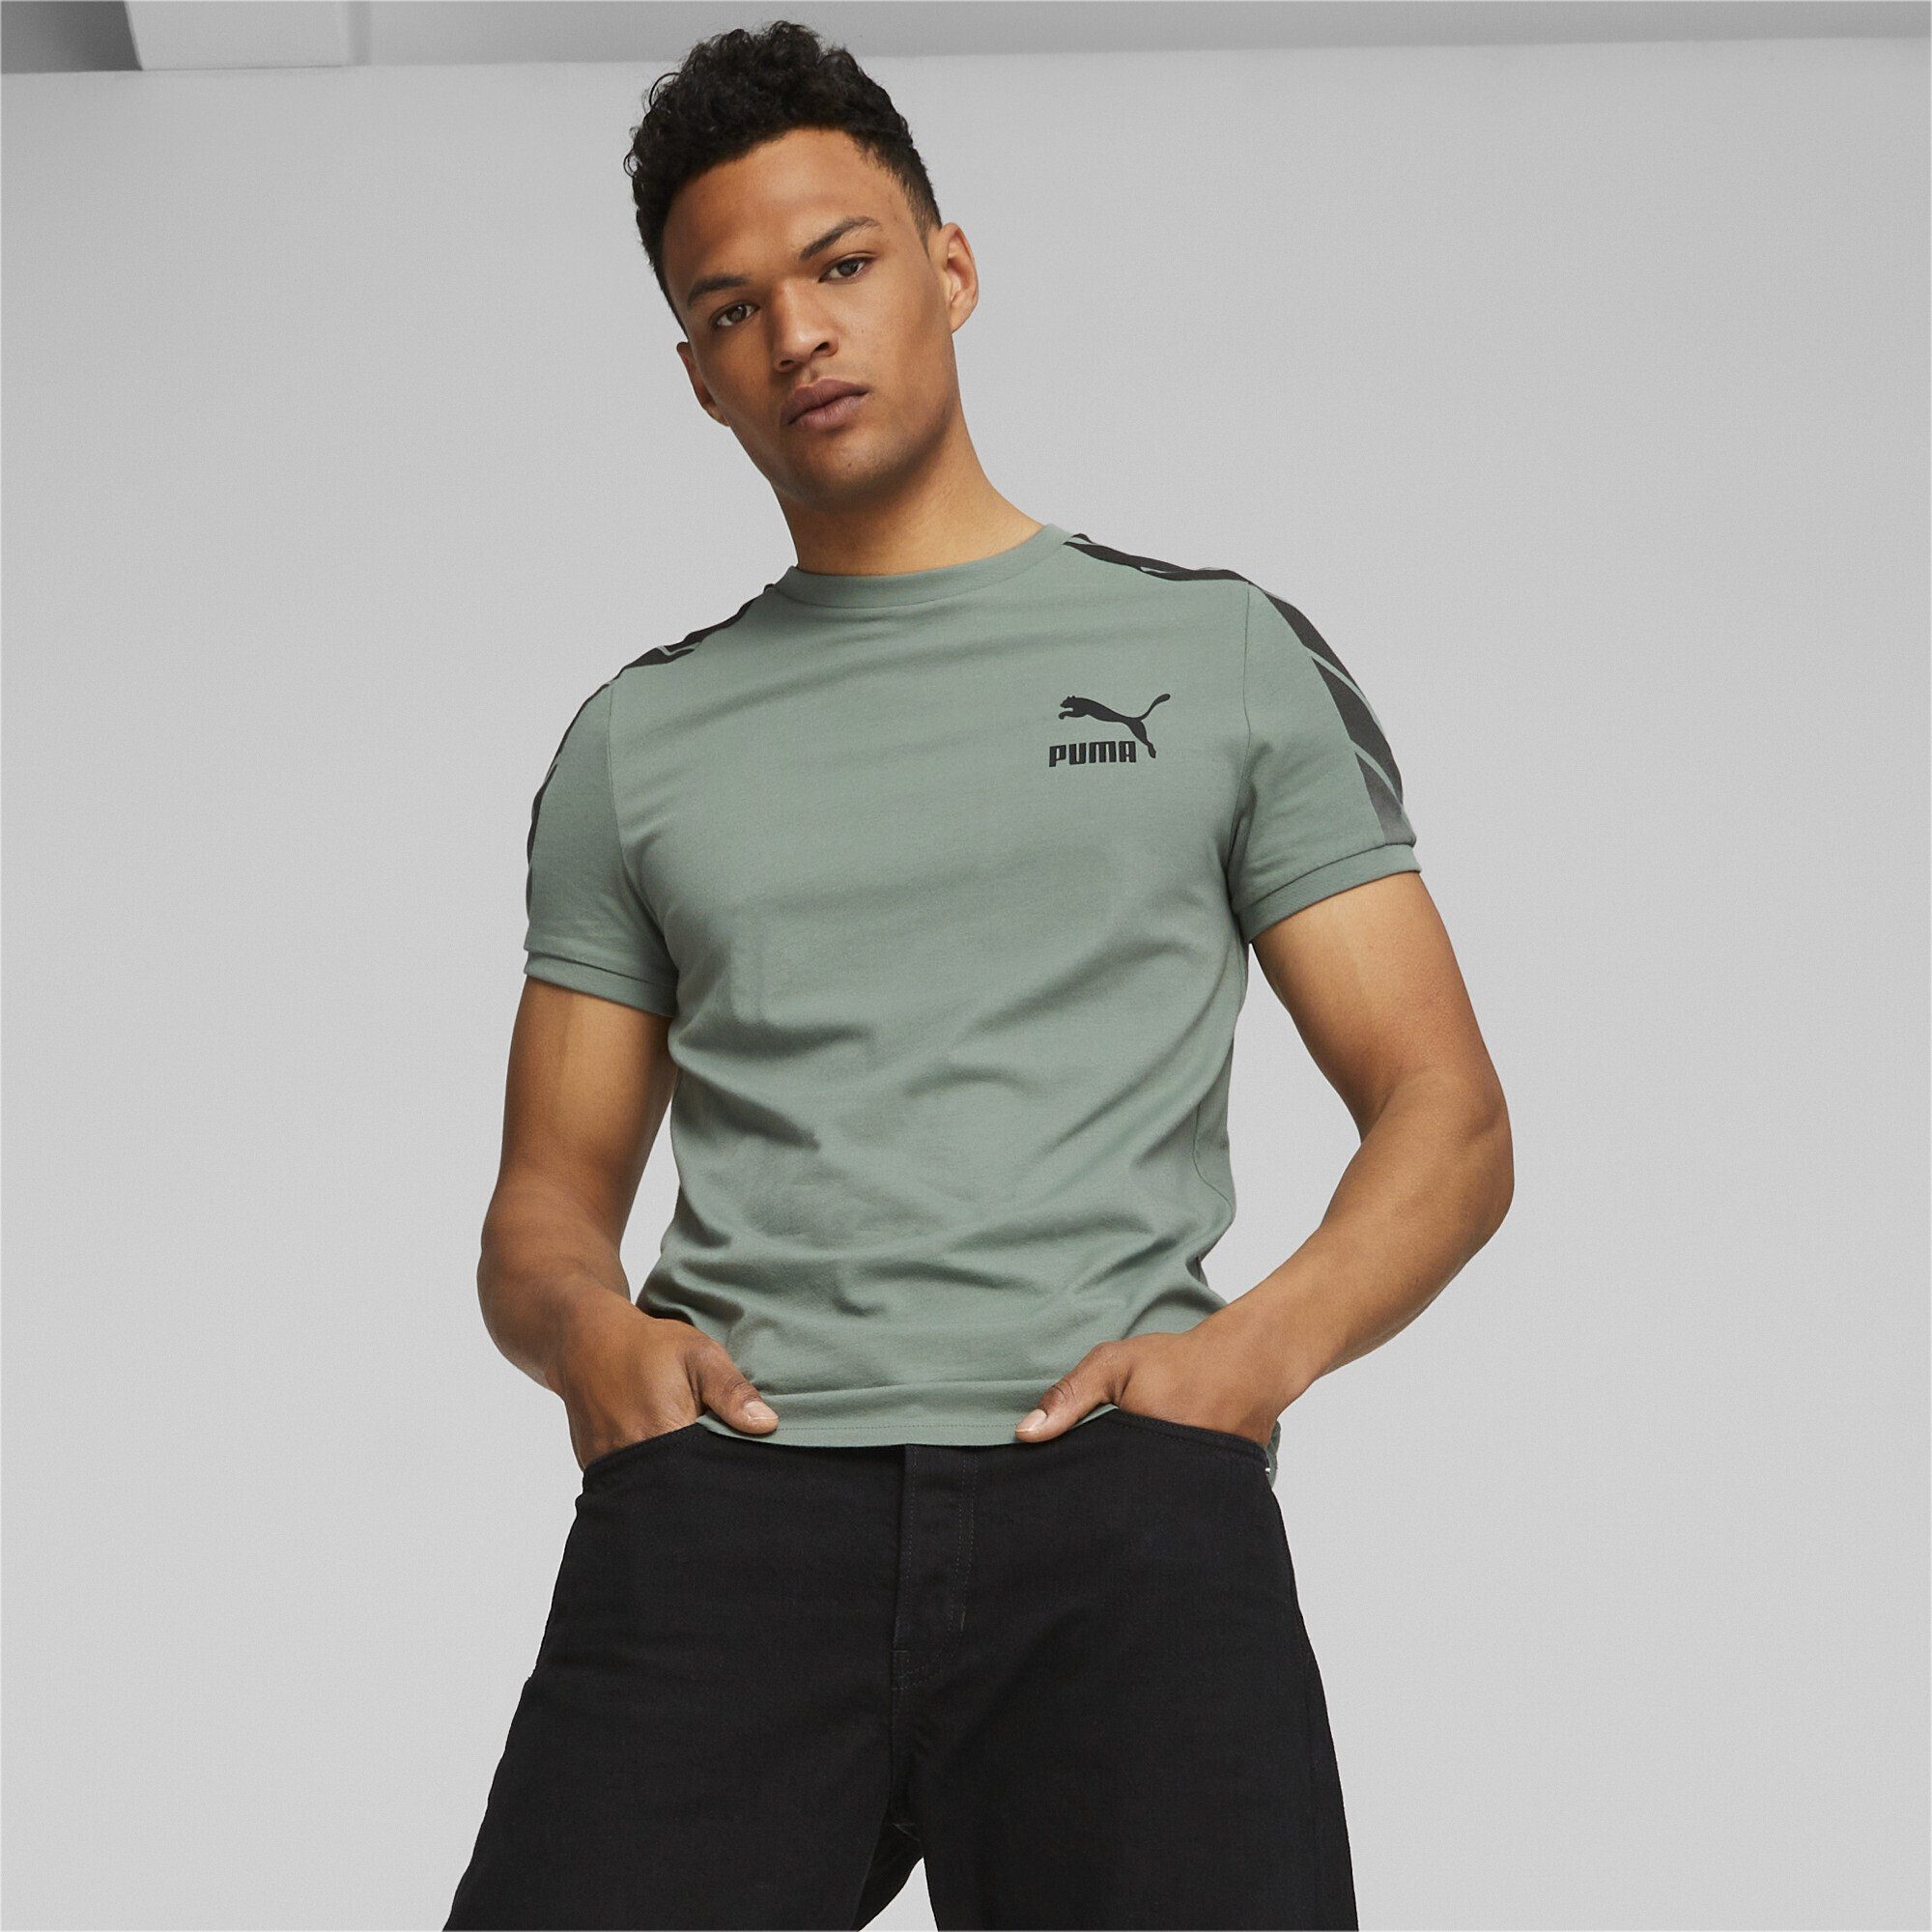 PUMA T-Shirt T7 Green Herren Sport Eucalyptus T-Shirt